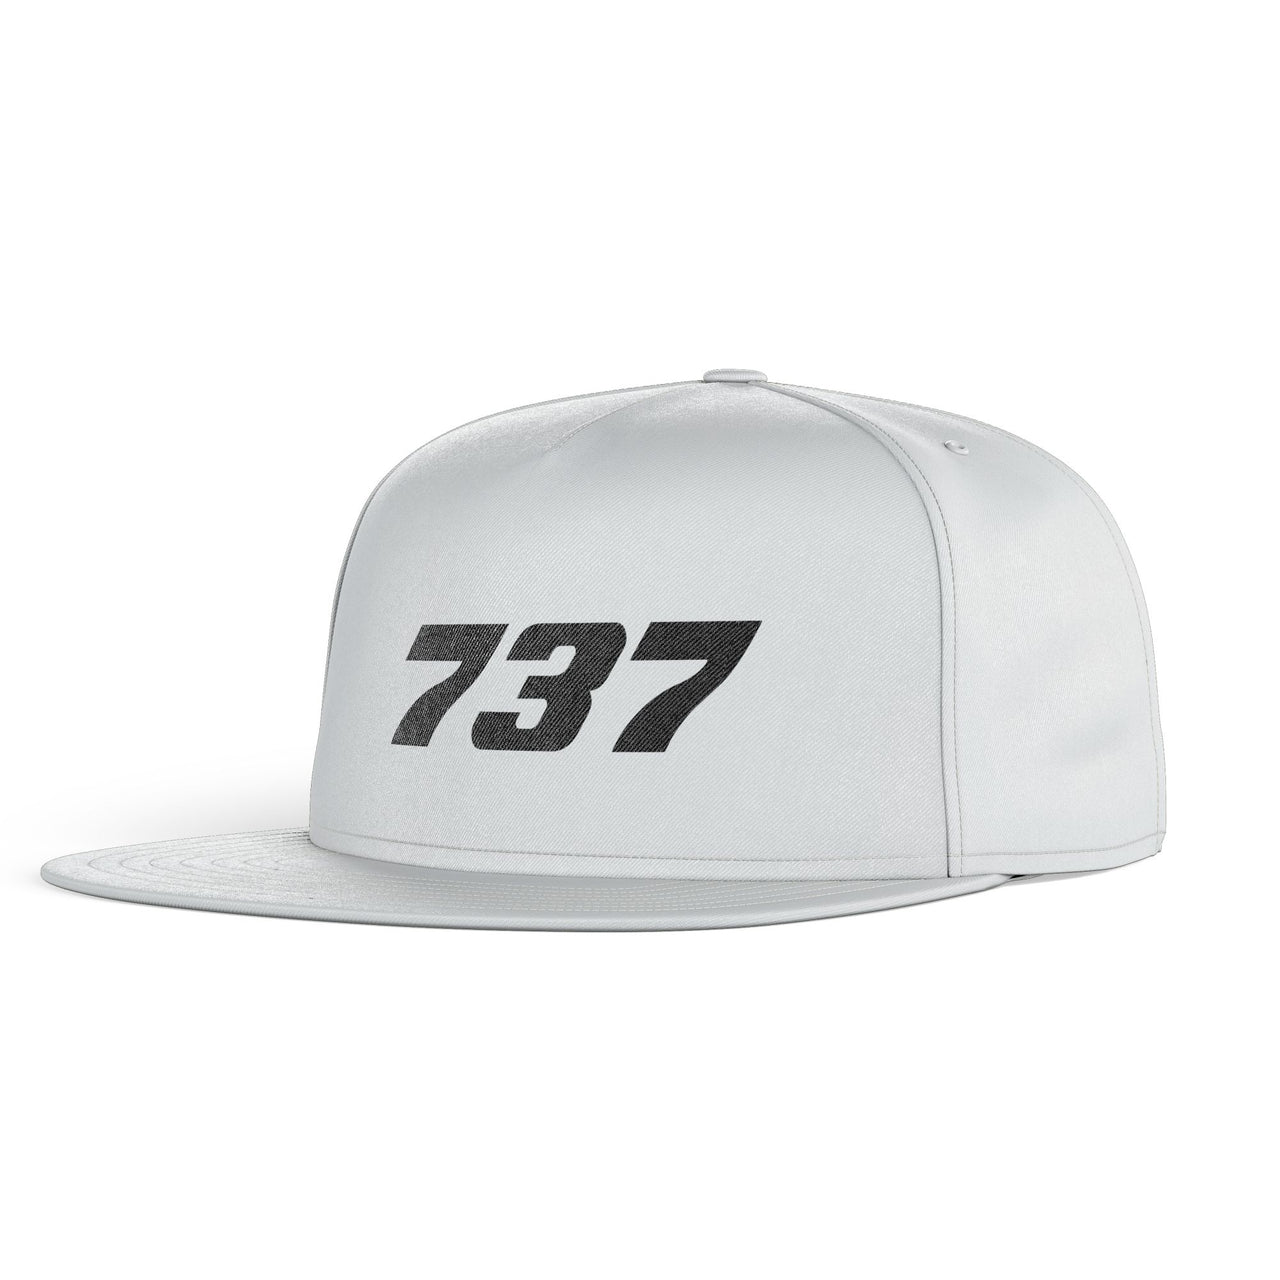 737 Flat Text Designed Snapback Caps & Hats